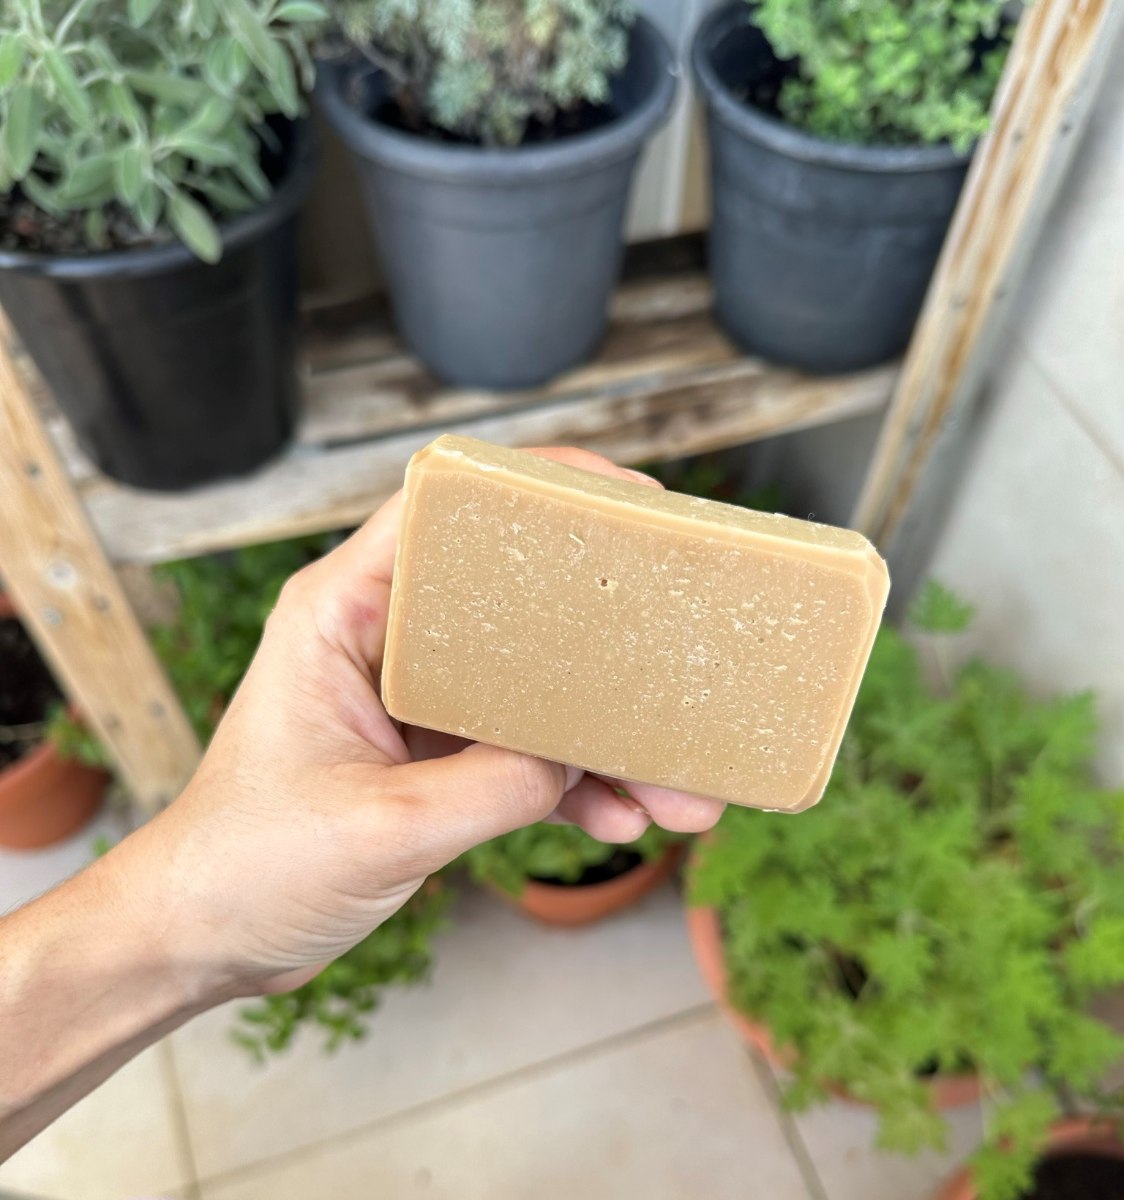 סבון טבעי בעבודת יד - סבון חליטת צמחים עם ניחוח הדרים